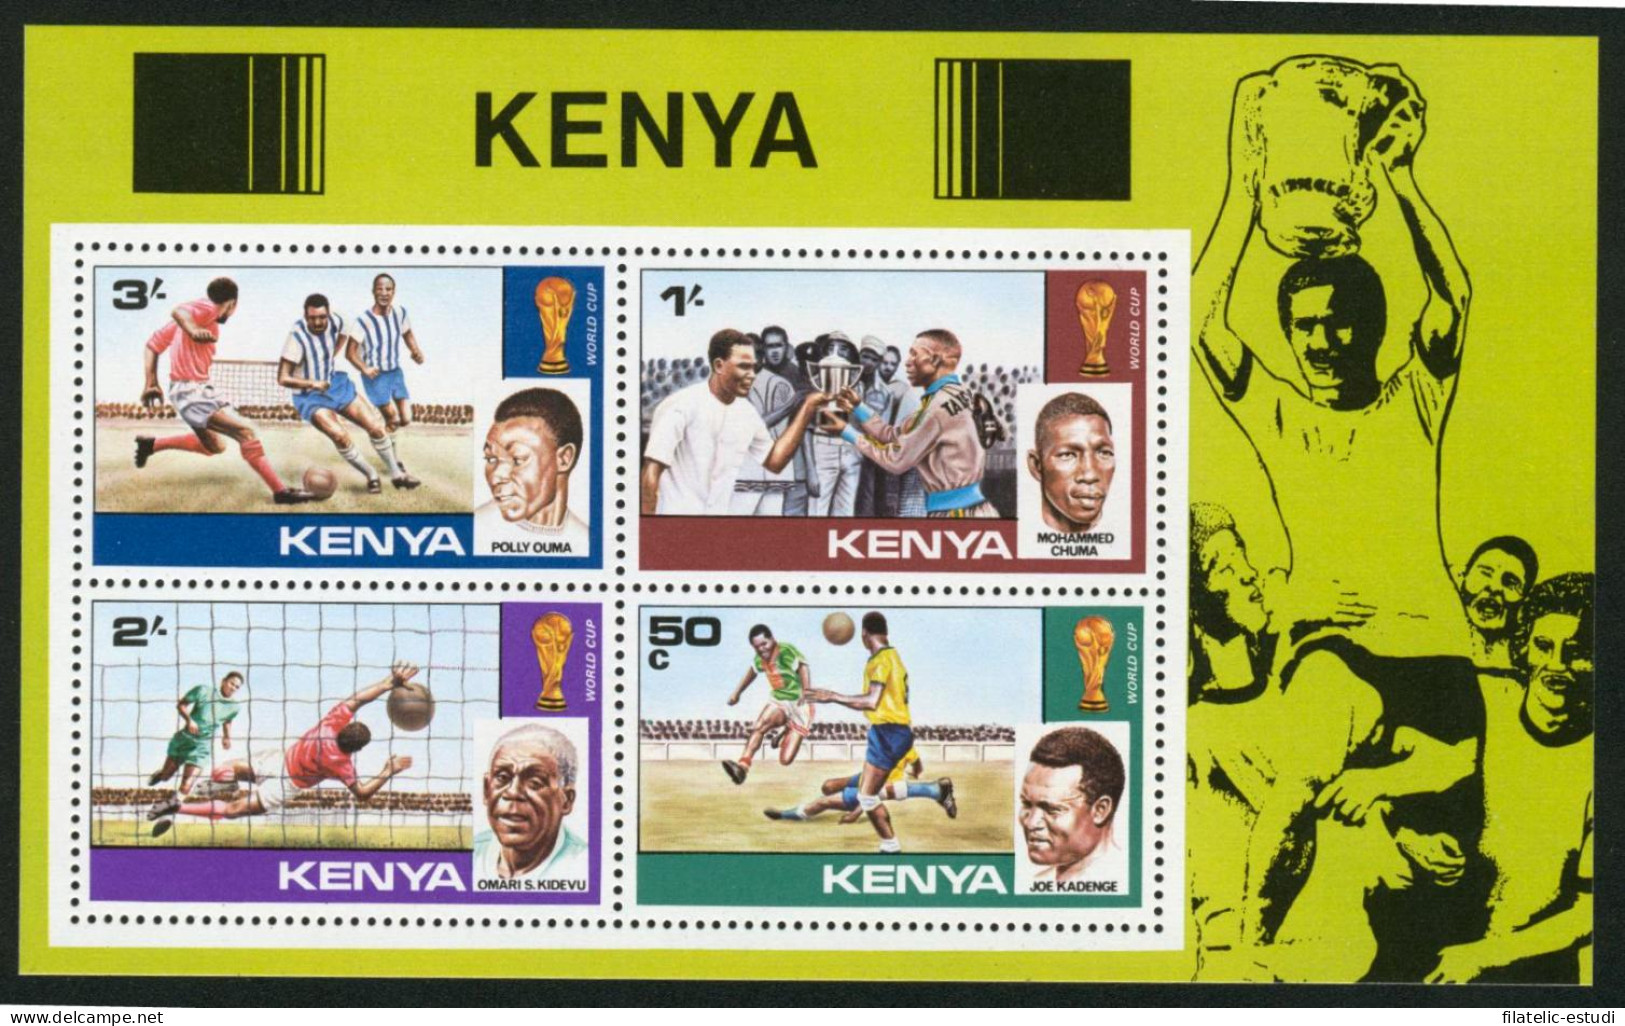 DEP1 Kenia HB 11 MNH - Kenya (1963-...)